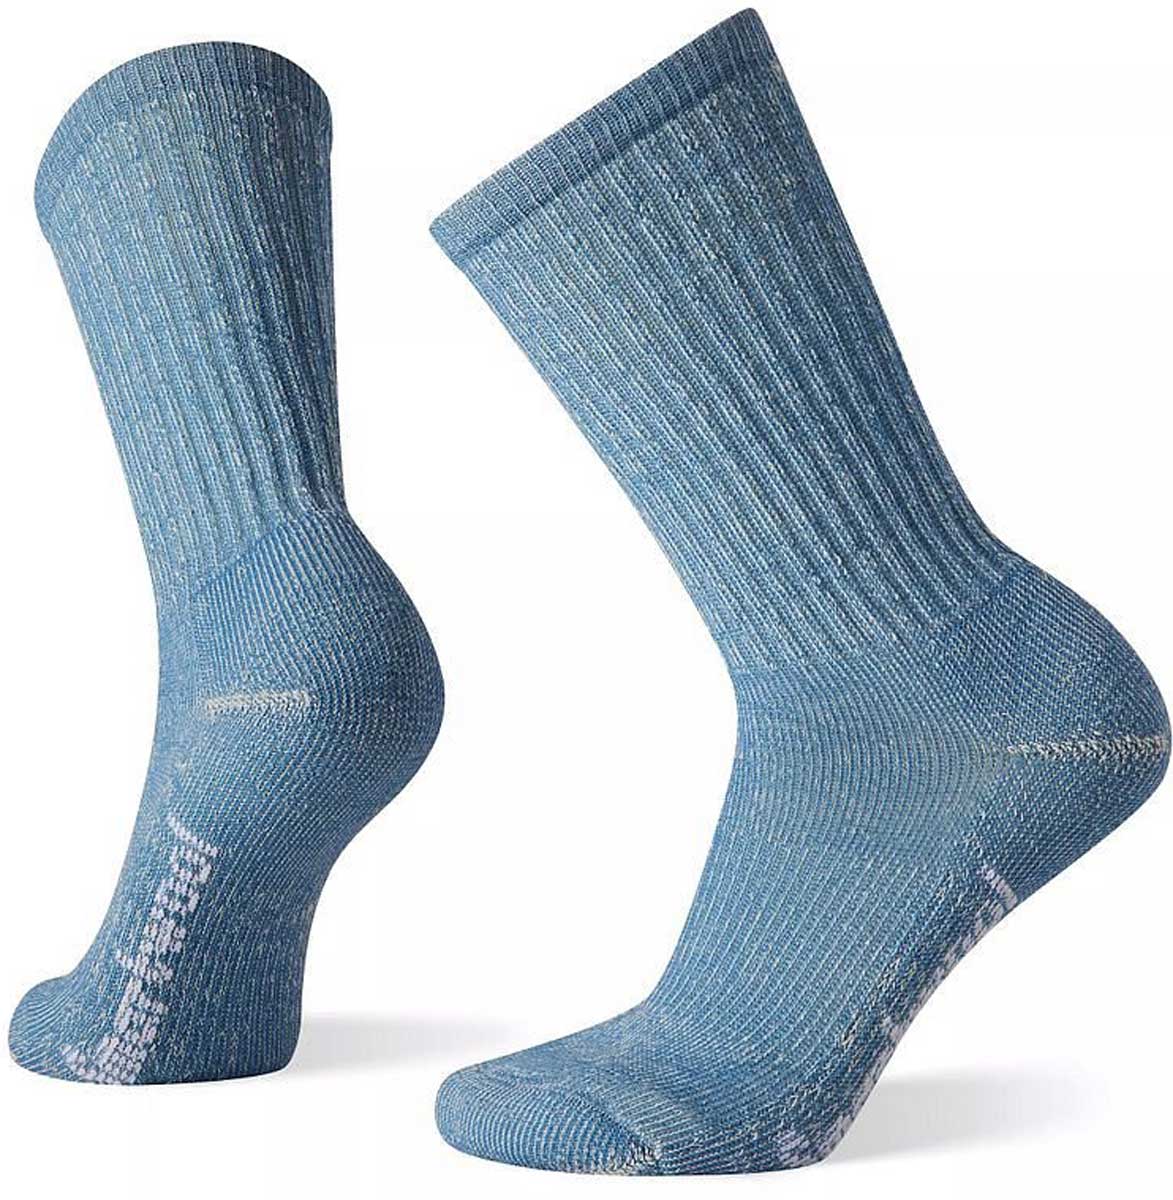 Women's outdoor socks